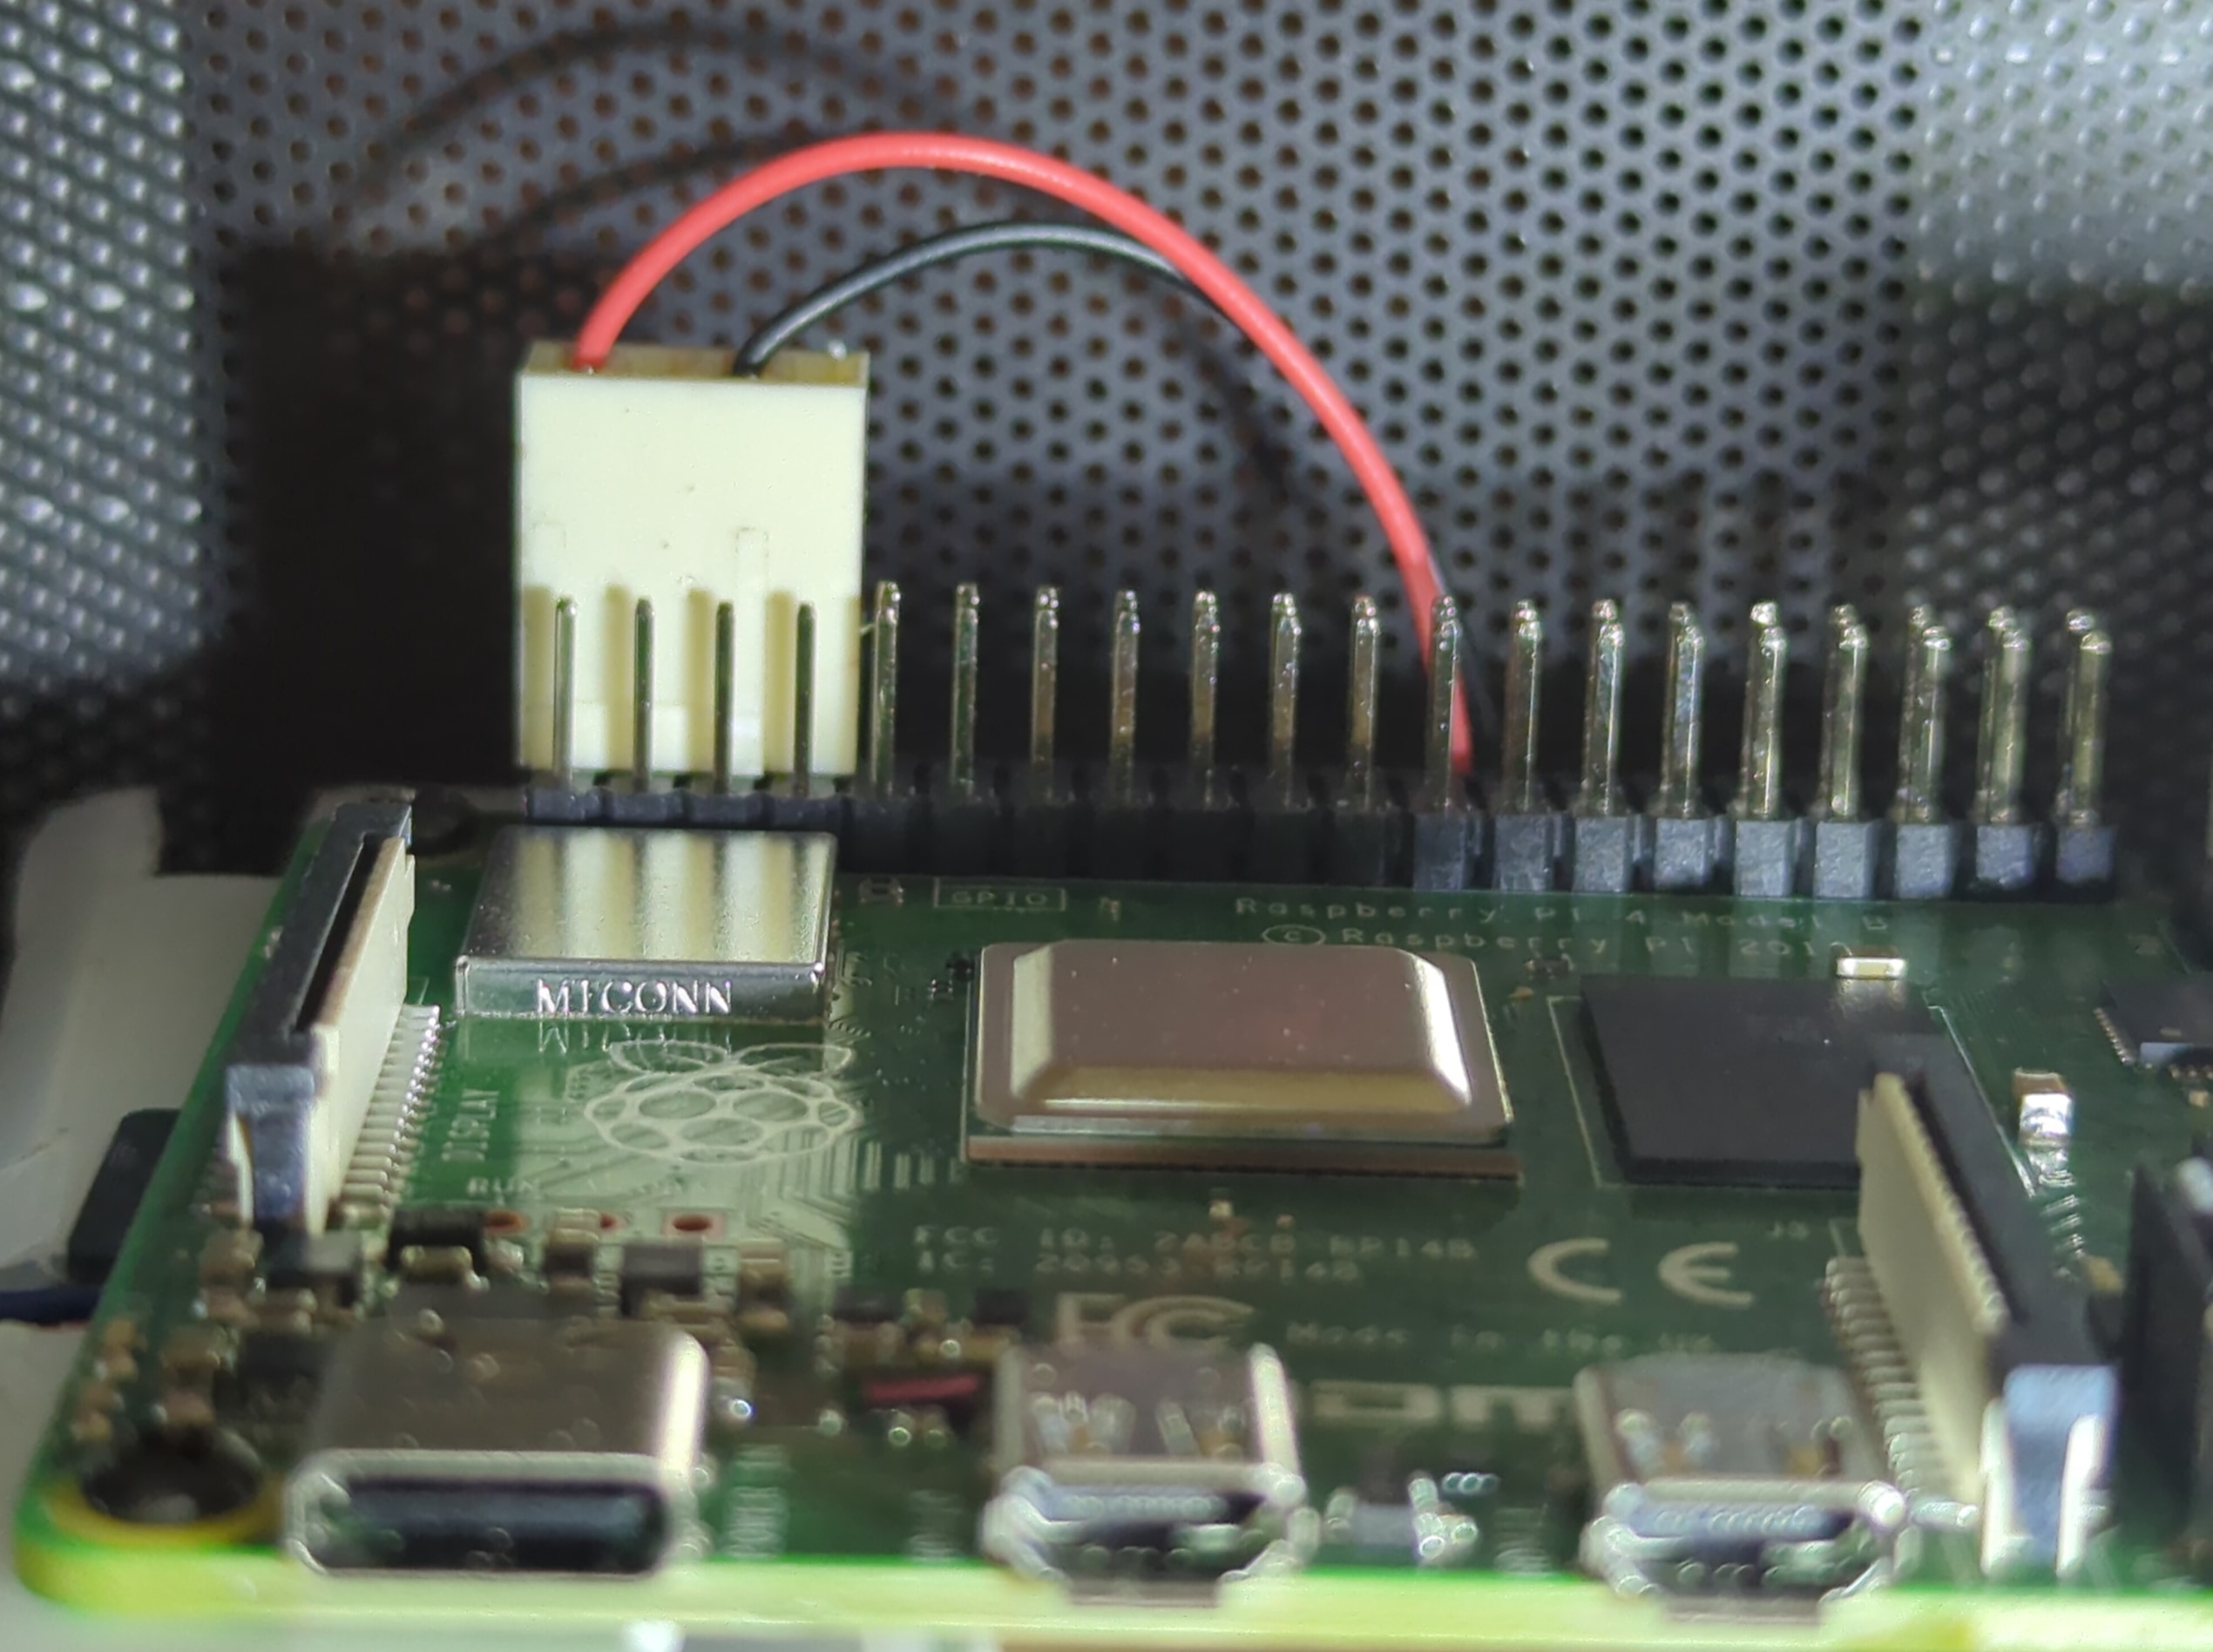 Підключення вентилятора до плати Raspberry Pi використовуючи GPIO інтерфейс.